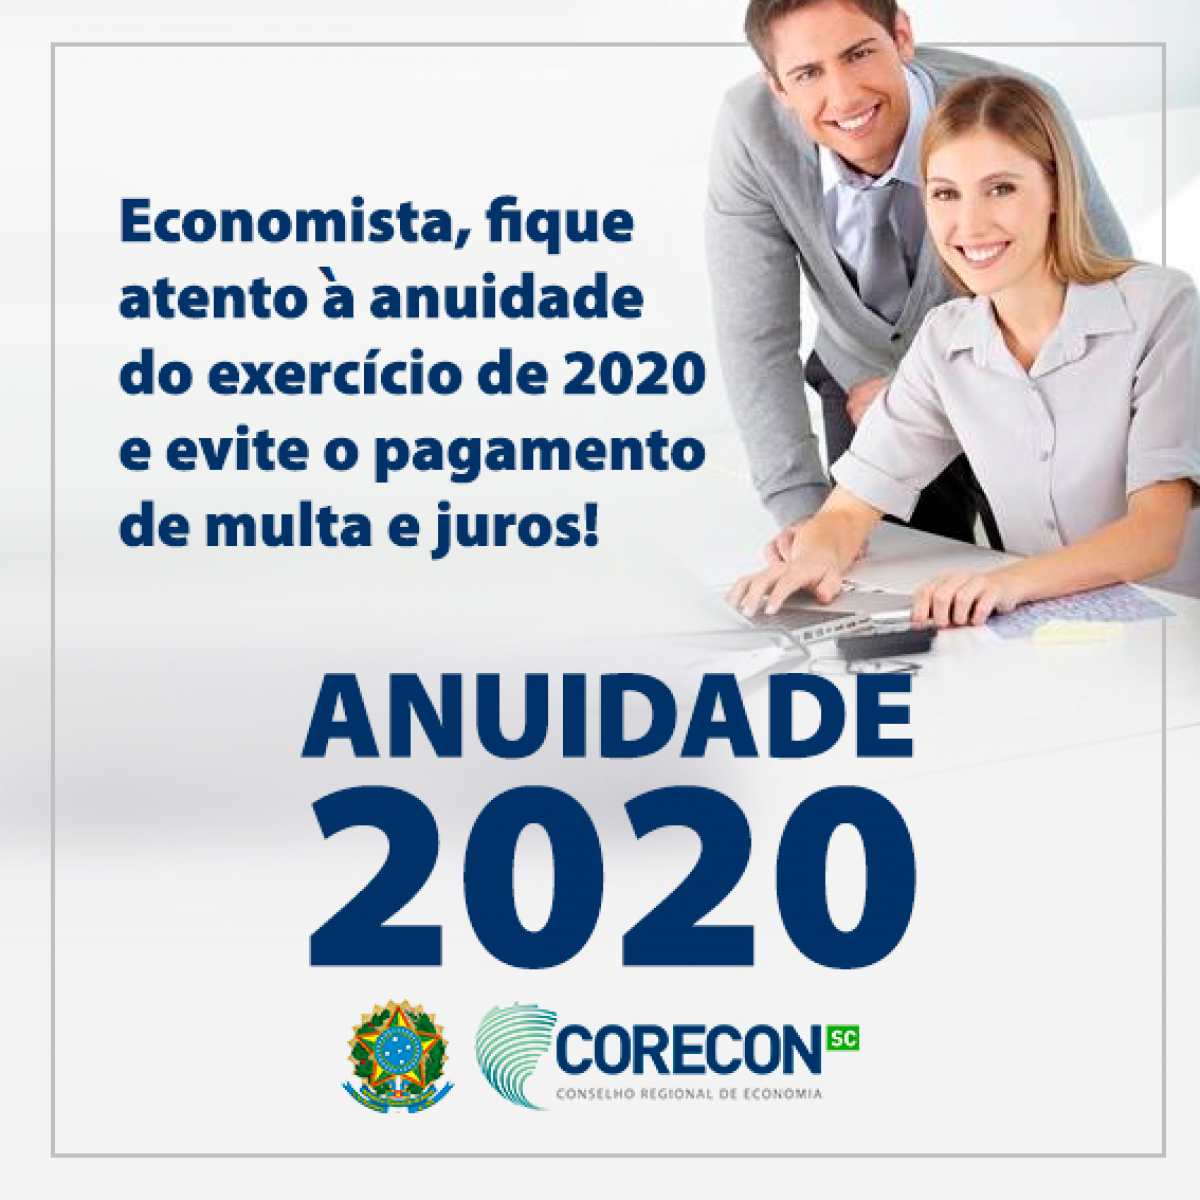 Renove a anuidade de 2020 que expira no dia 31 de março - Corecon/SC